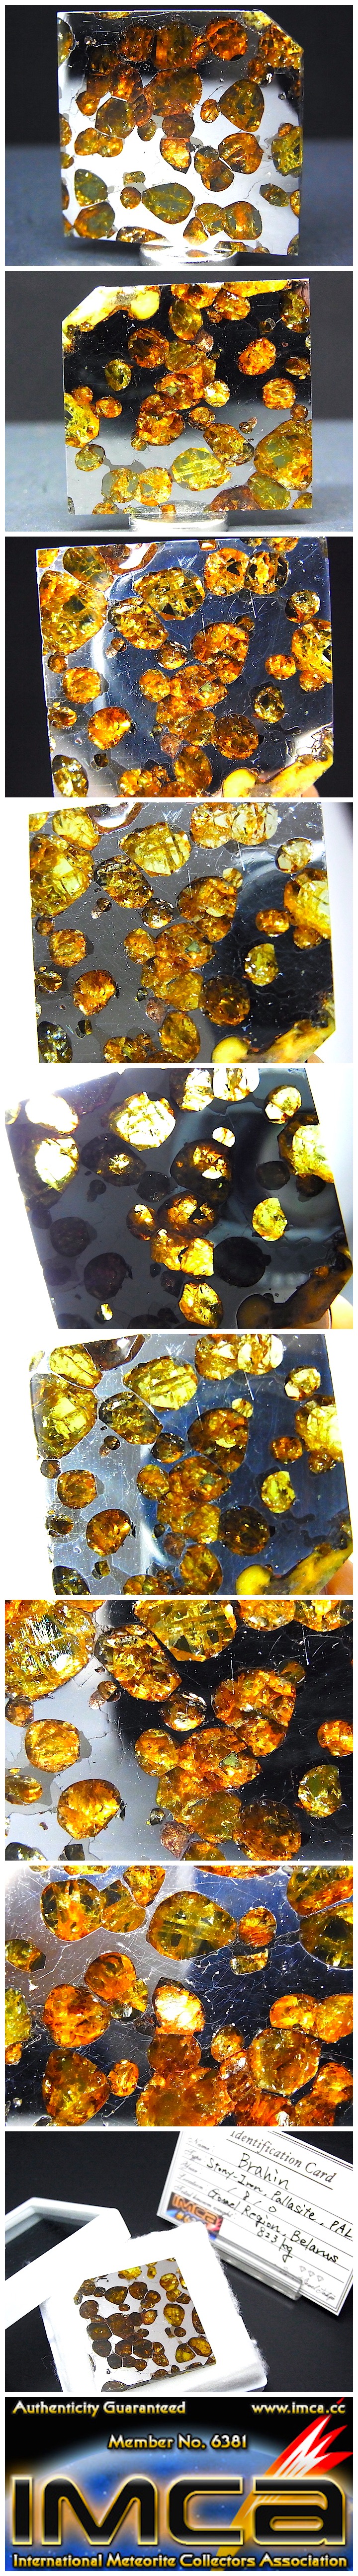 【 販売済 隕石 】ブラヒン隕石 パラサイト隕石 極美品 隕石由来のペリドット Brahin